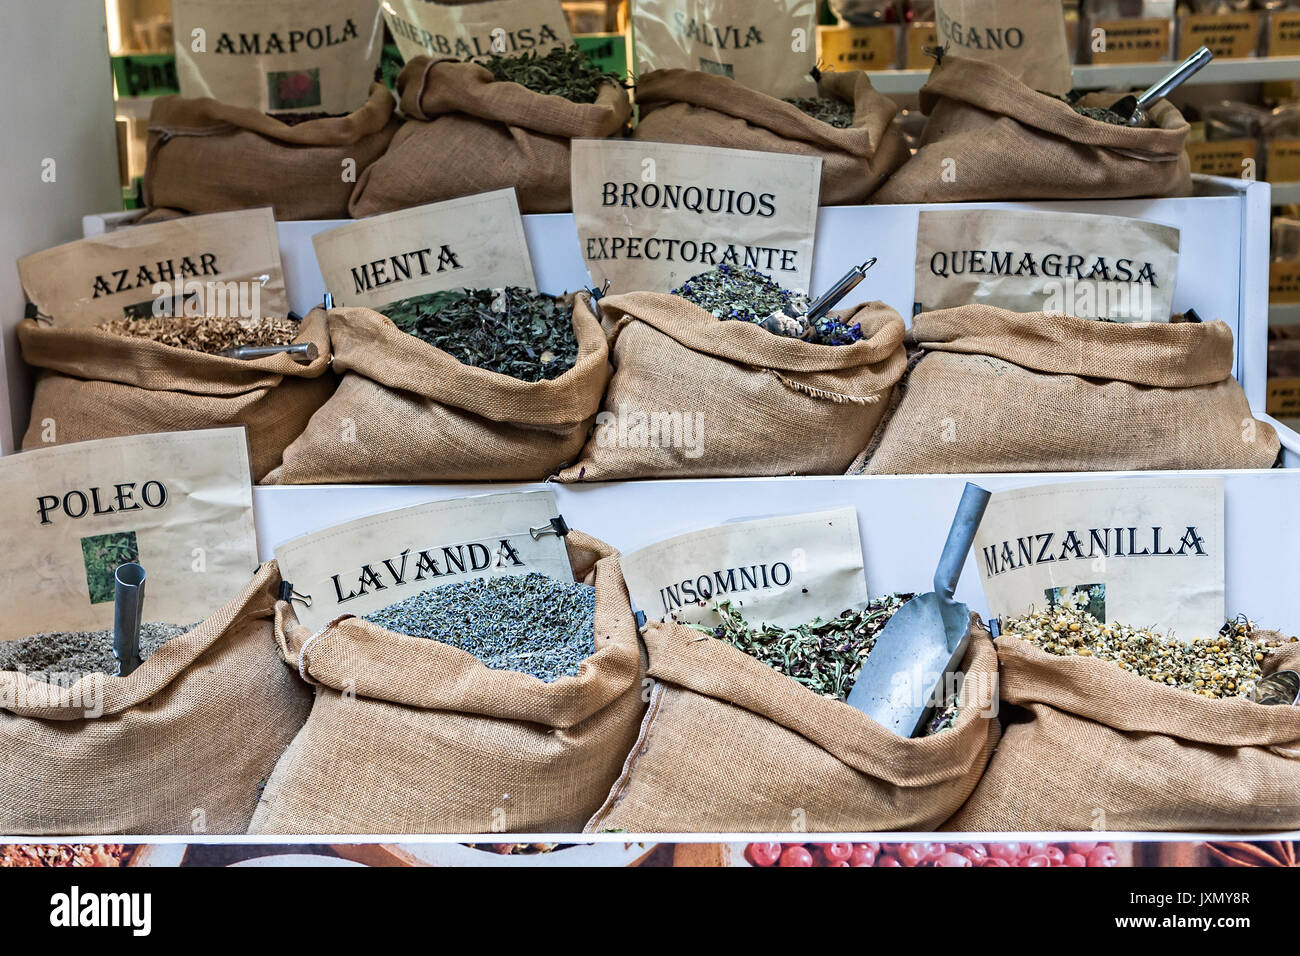 Mercado tradicional de plantas medicinales, Granada, España Foto de stock